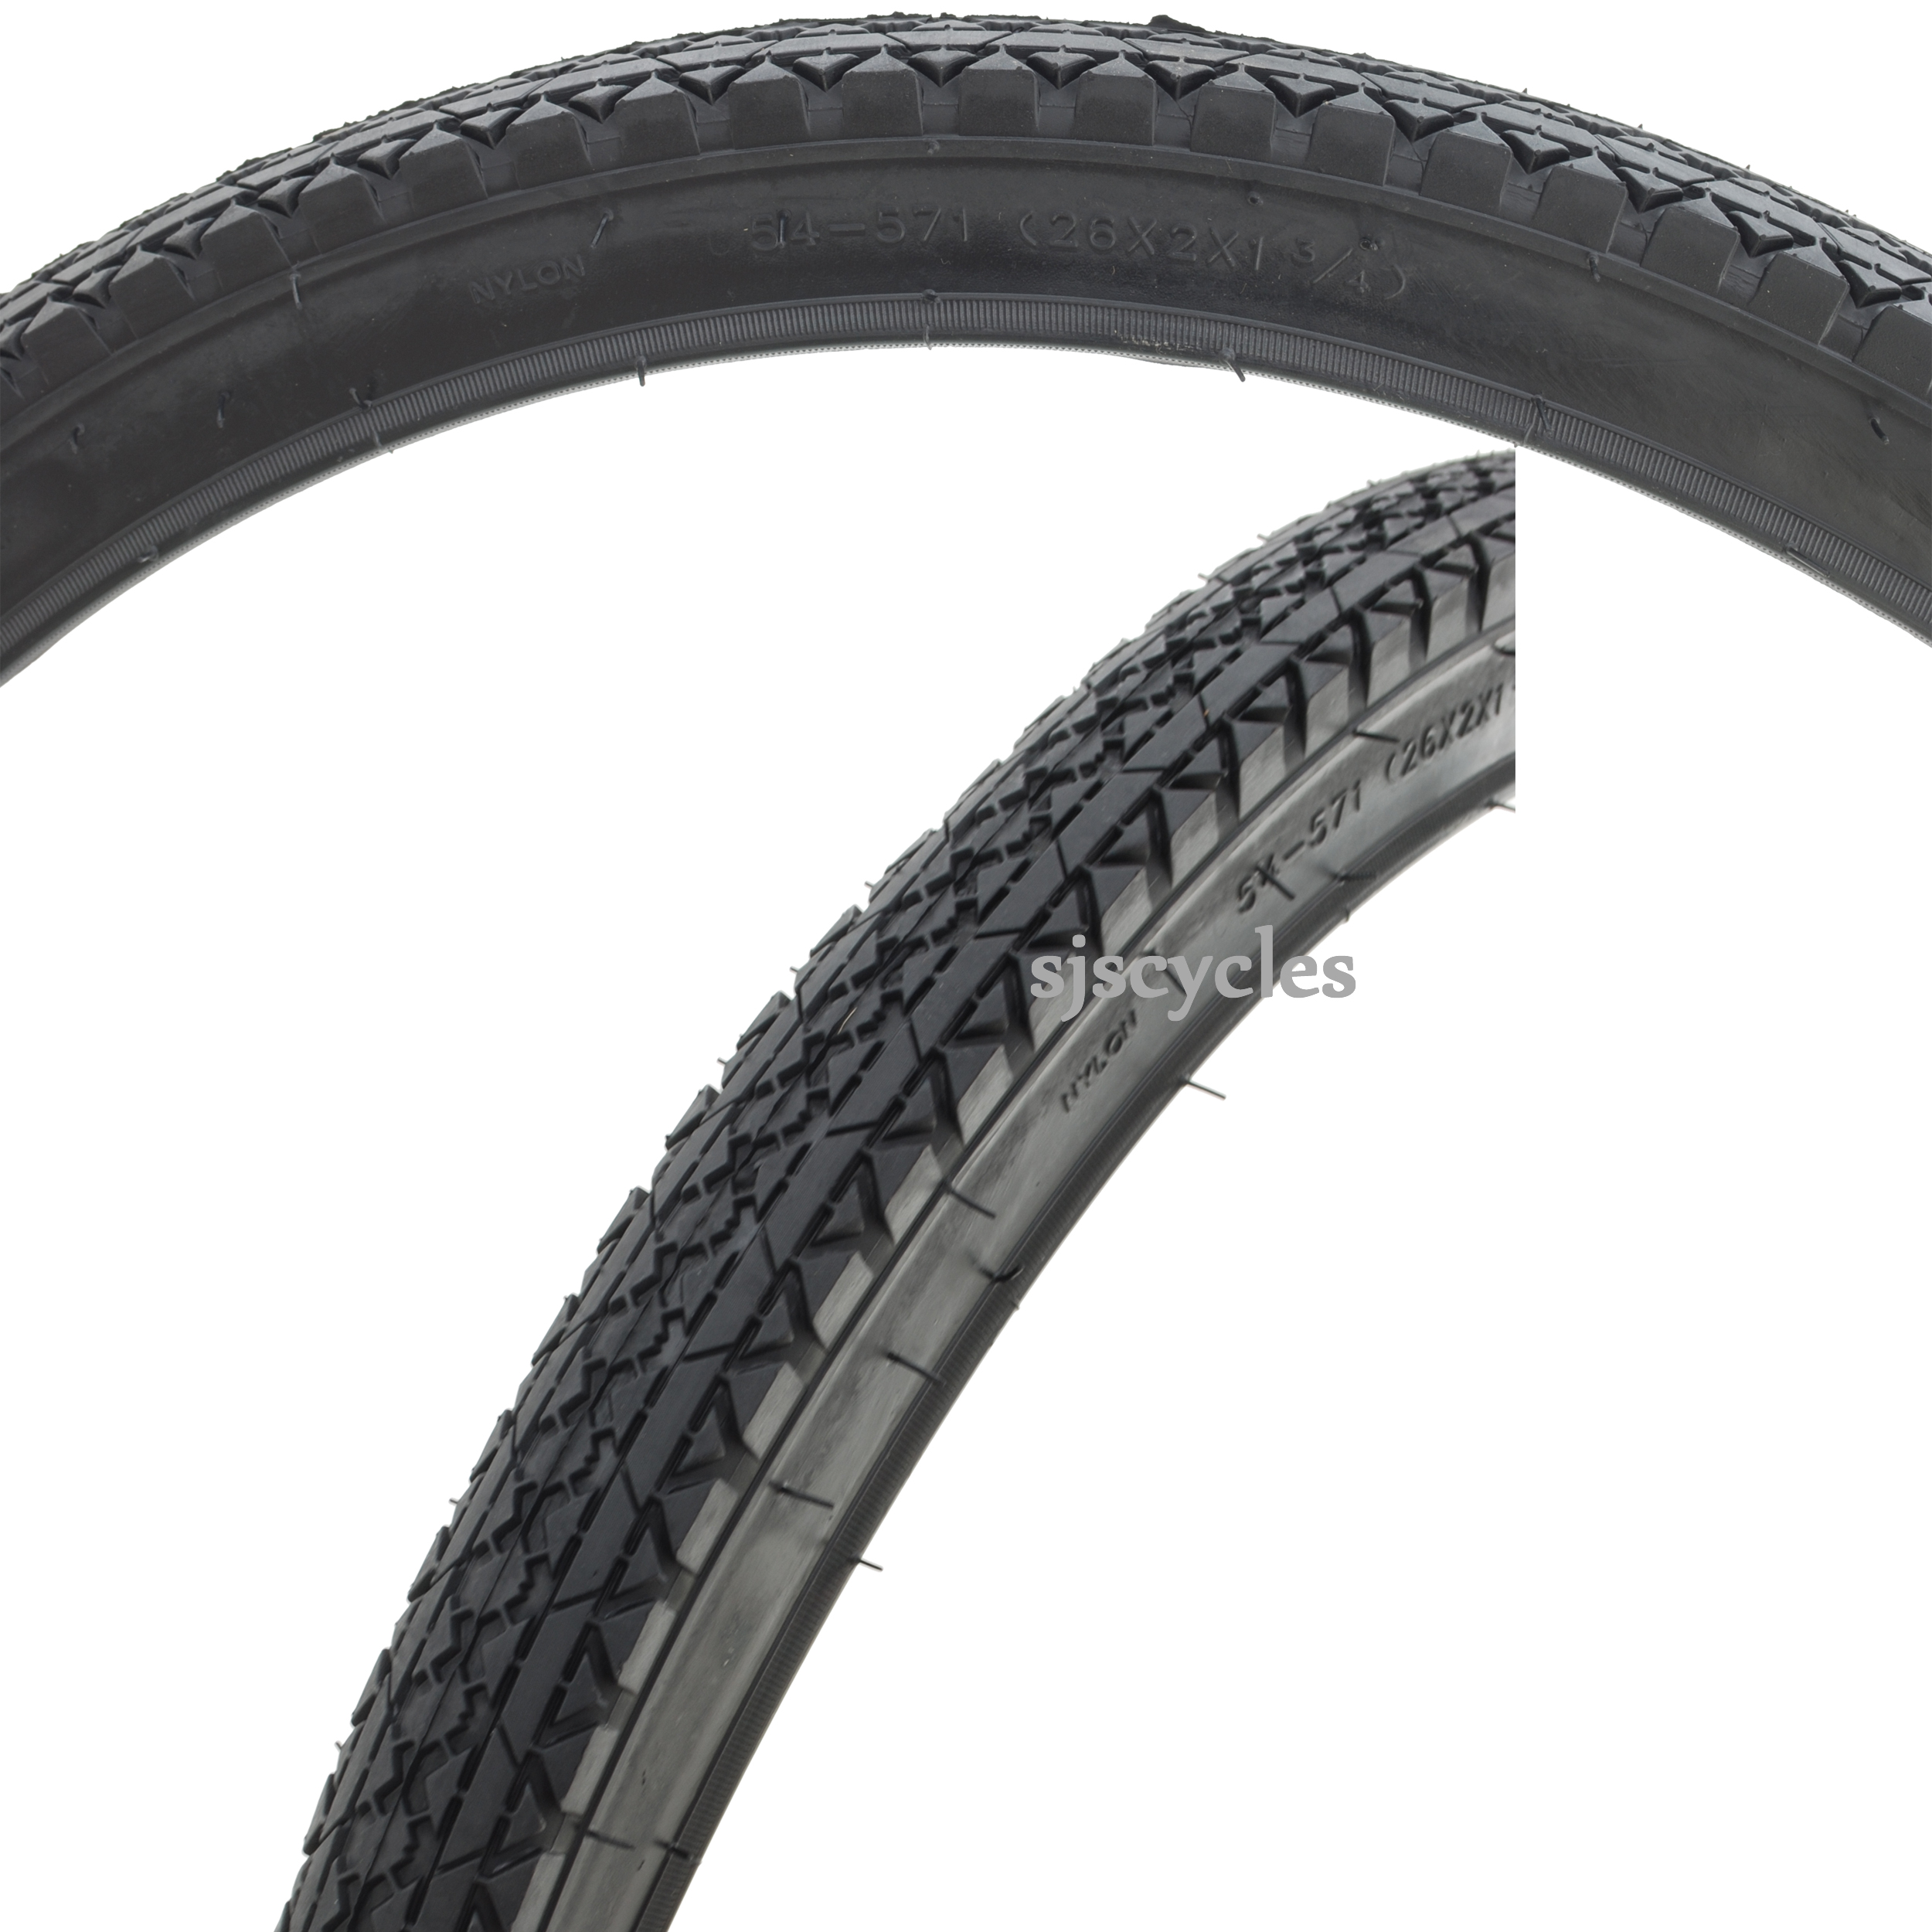 650c cyclocross tyres